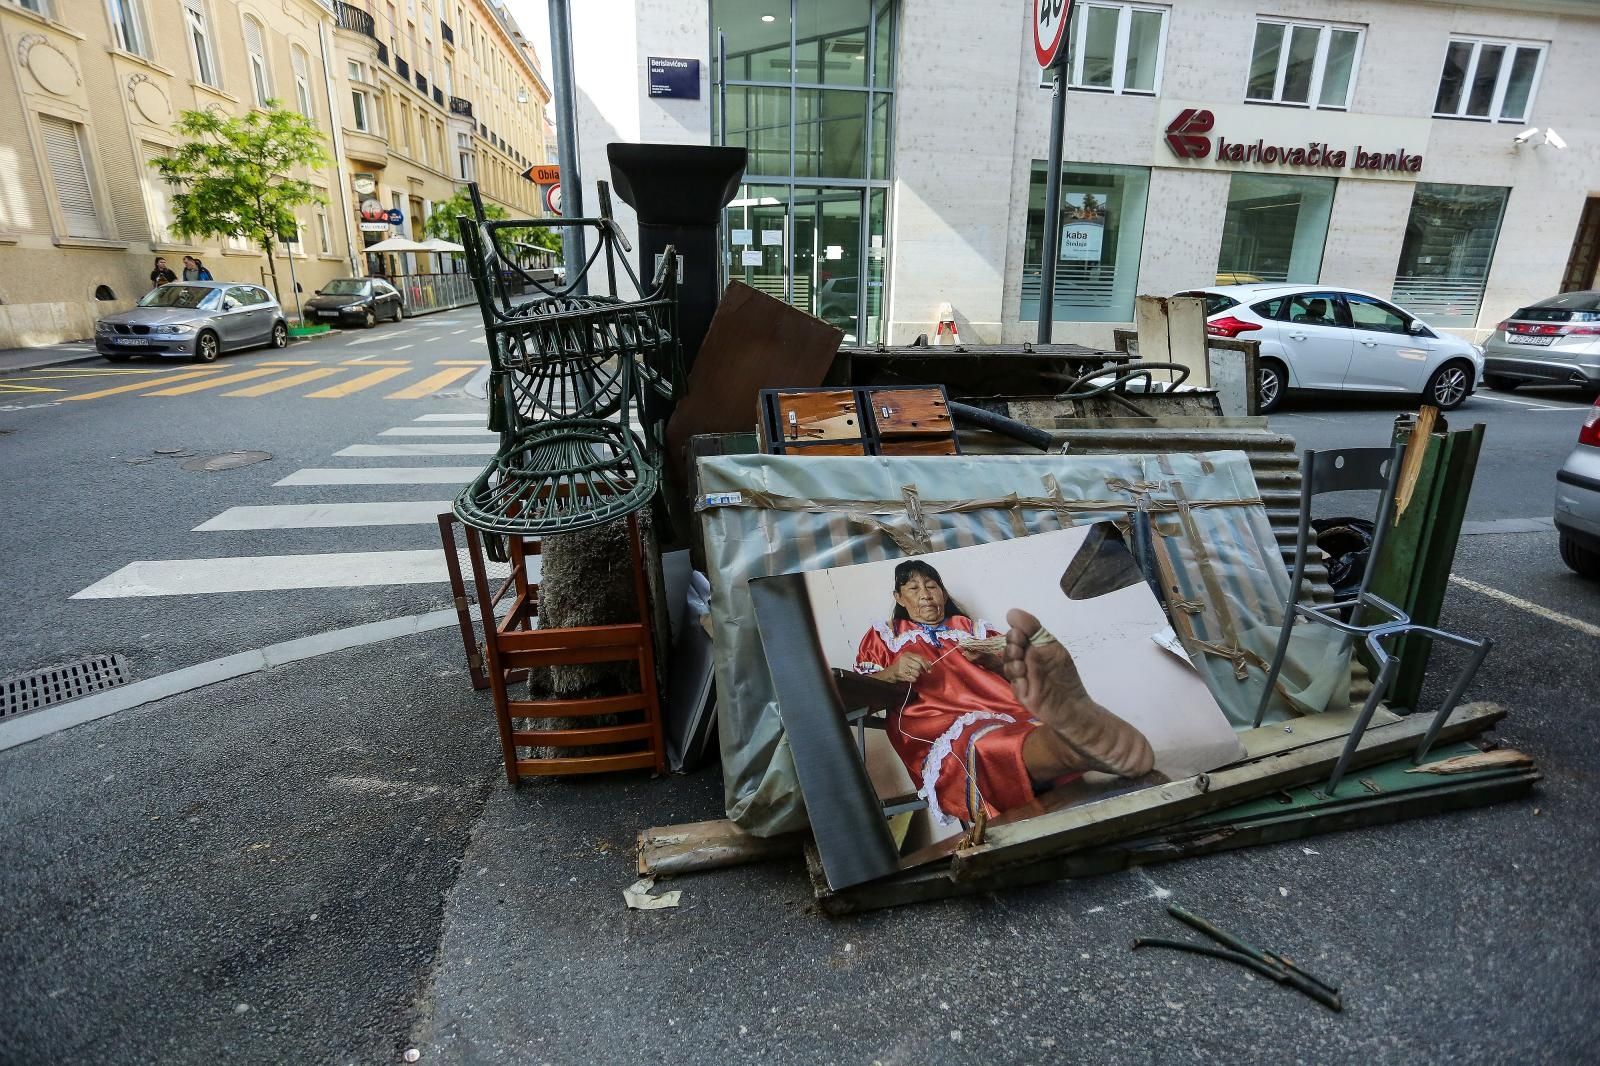 24.05.2020., Zagreb - Krupni otpad i fotografija nepoznatog autora odbacena na ulici.
 Photo: Emica Elvedji/PIXSELL